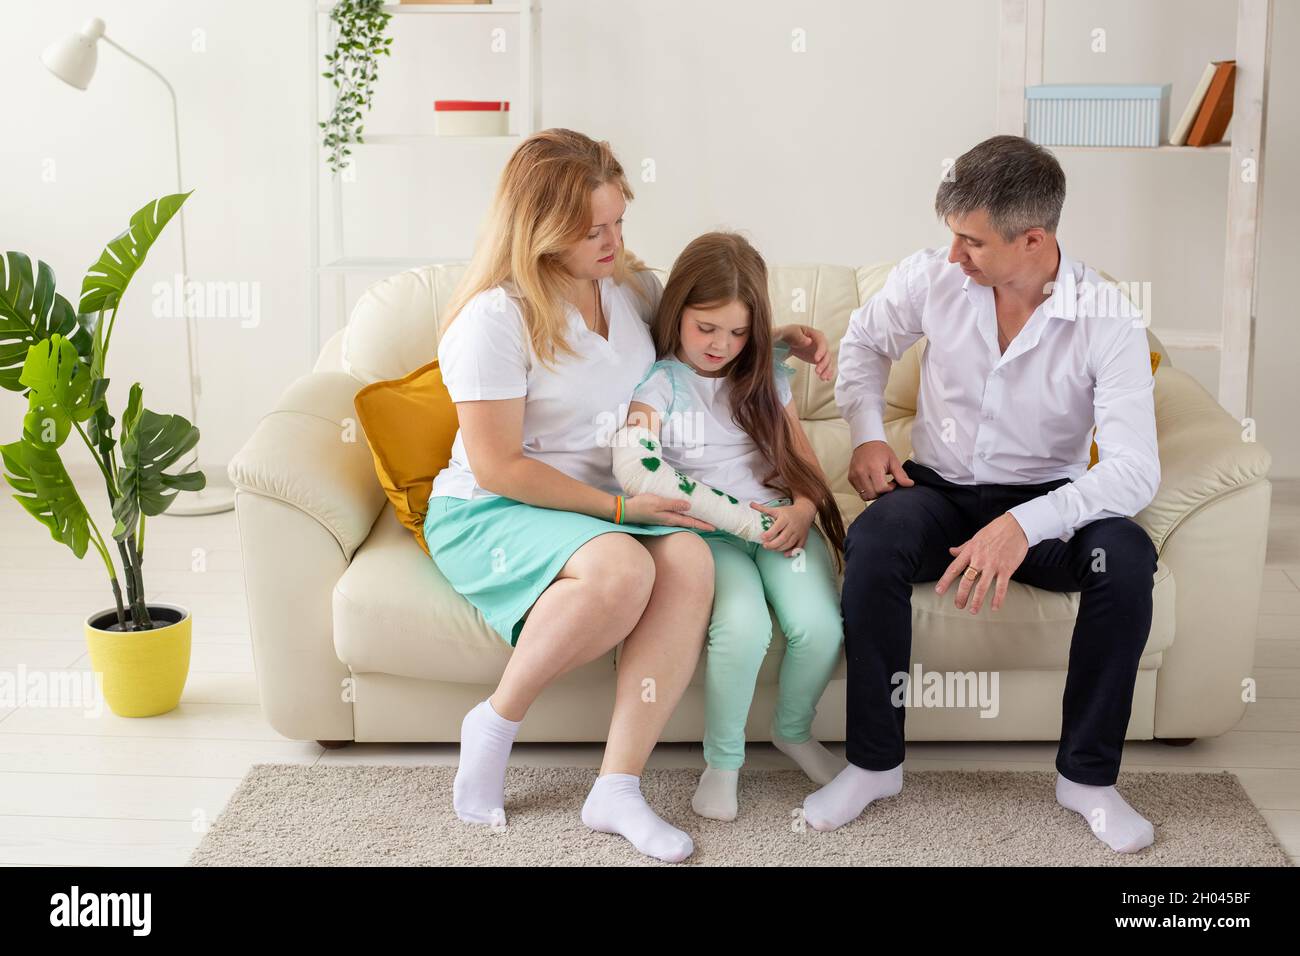 La famille est assise sur un canapé dans leur salon. Fille ont la main  blessée mais elle est heureuse d'être ensemble sa famille Photo Stock -  Alamy